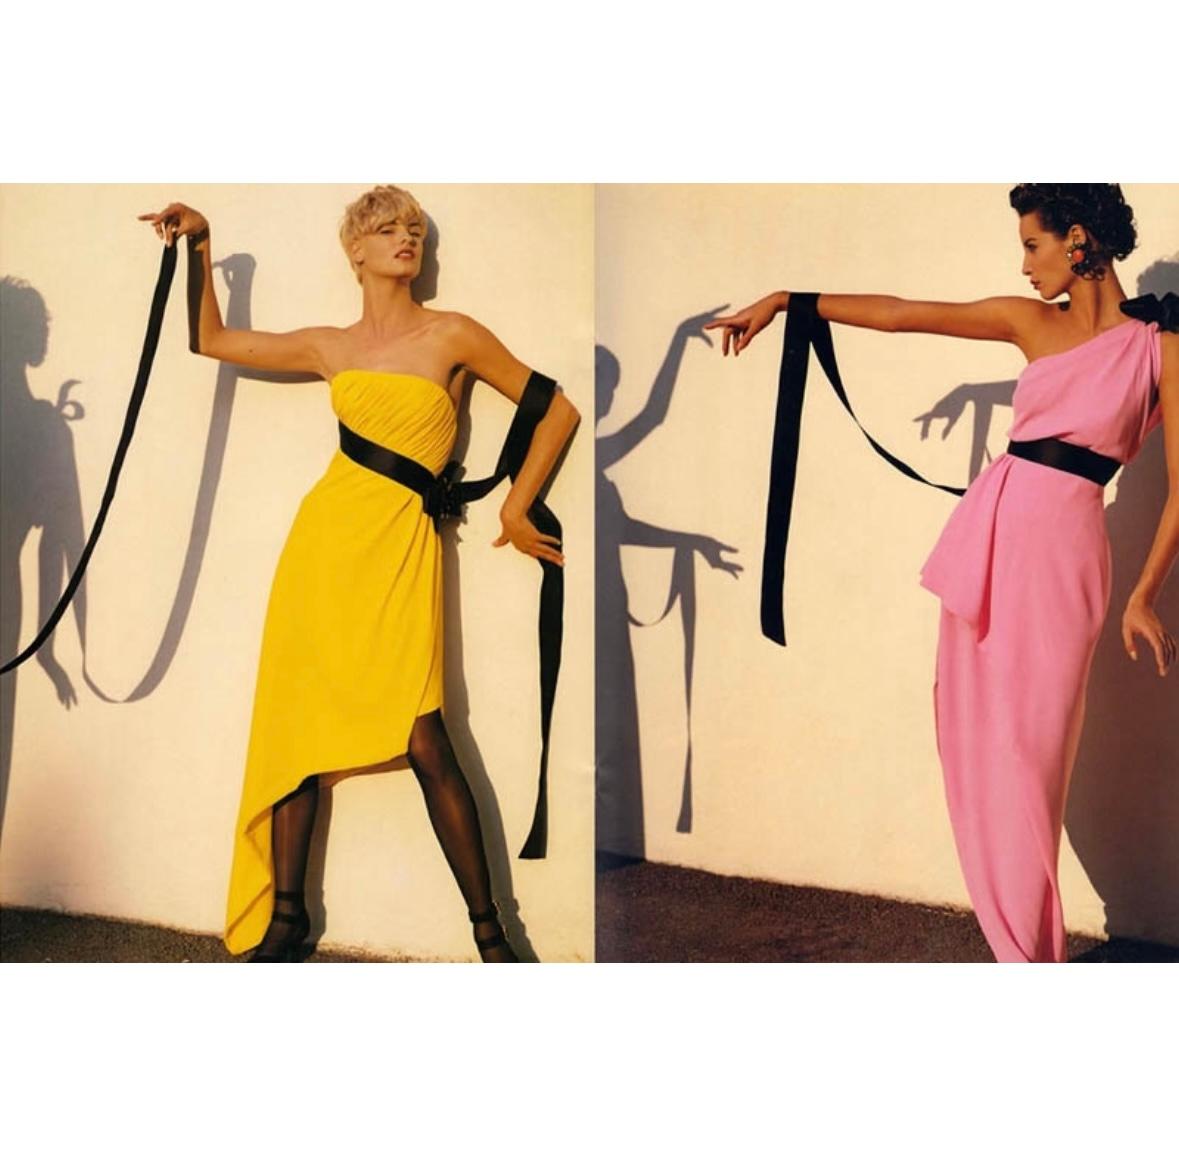 Présentation d'une incroyable robe bustier jaune vif de Chanel, dessinée par Karl Lagerfeld. Issue de la collection printemps/été 1991, cette robe a fait ses débuts sur les podiums de la saison et a également été mise en valeur dans la campagne